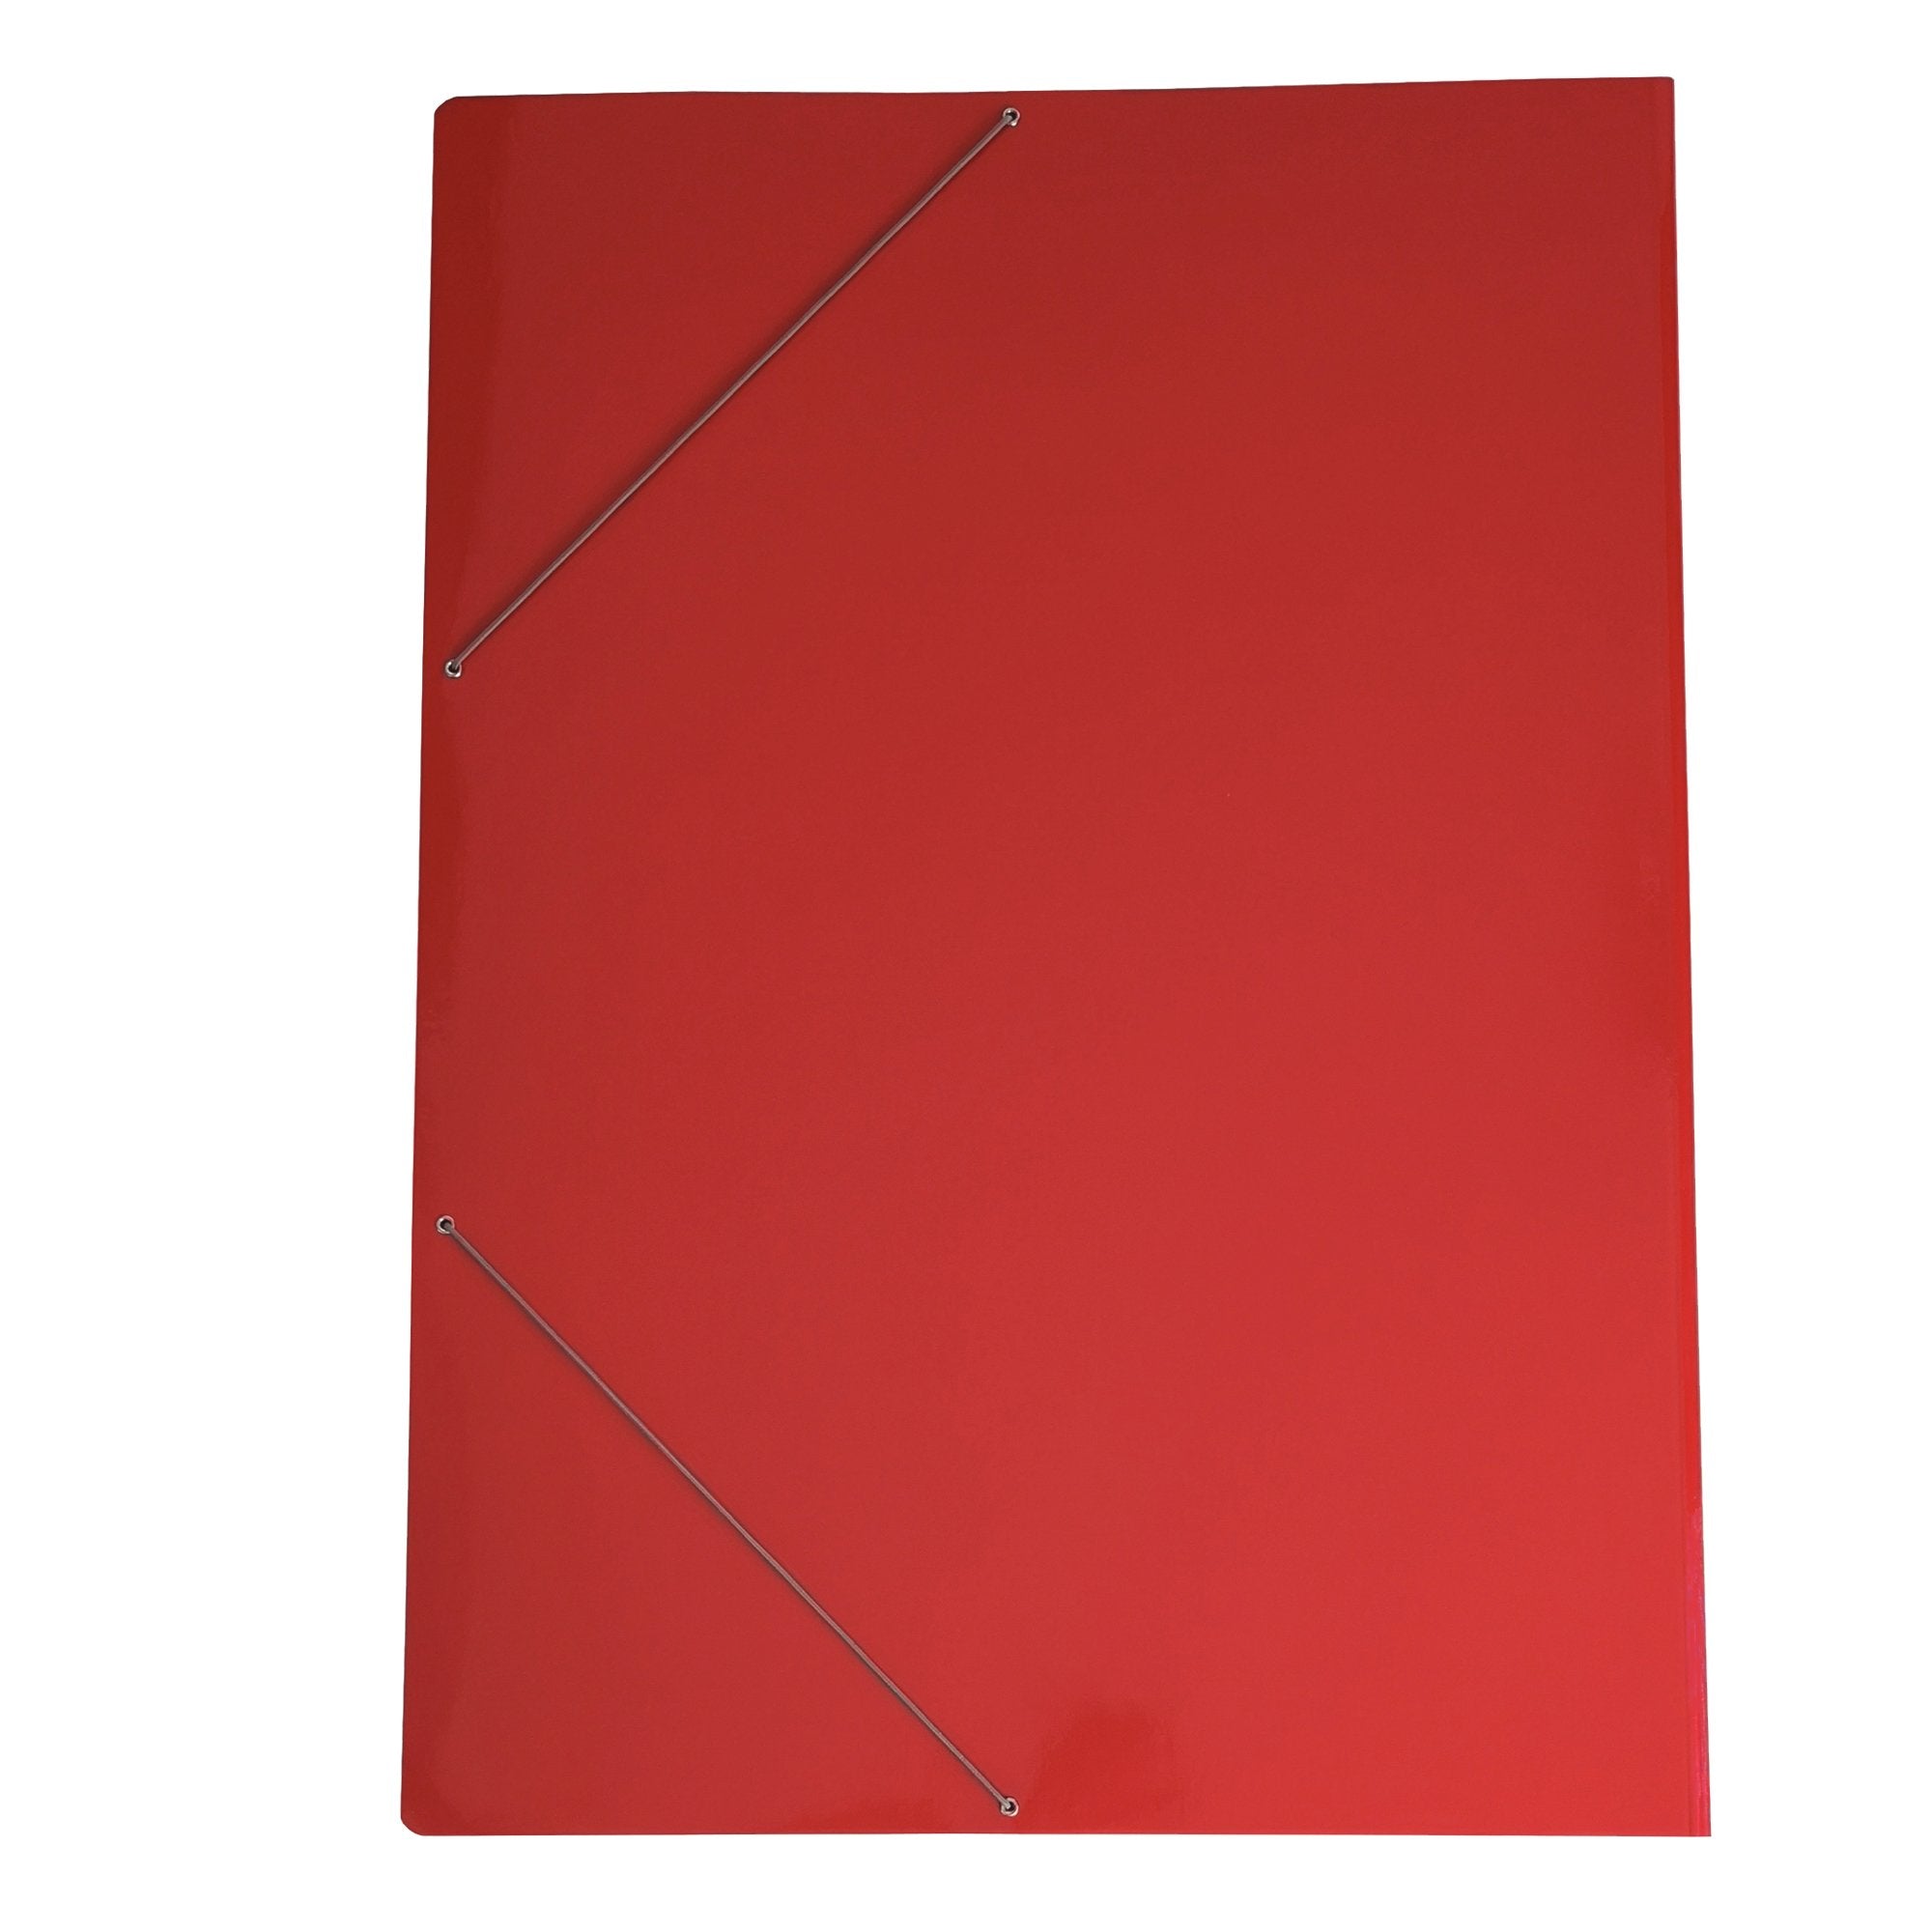 cartiere-del-garda-cartella-elastico-70x100cm-rosso-cartoncino-plast-71ld